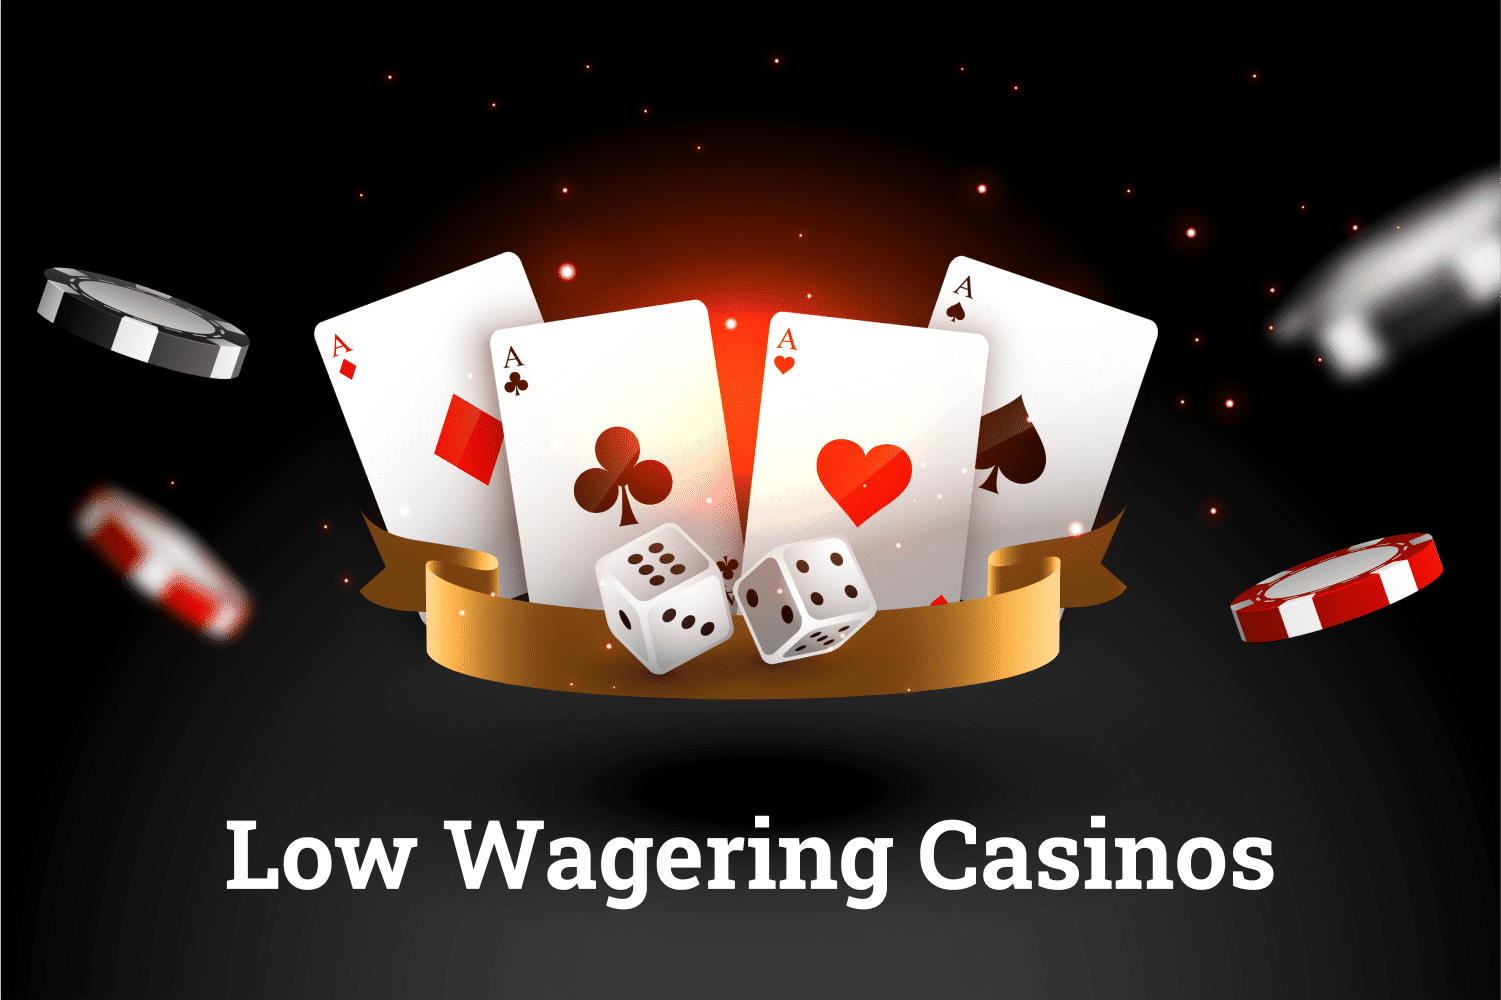 Low wagering casinos nnlxu xcea